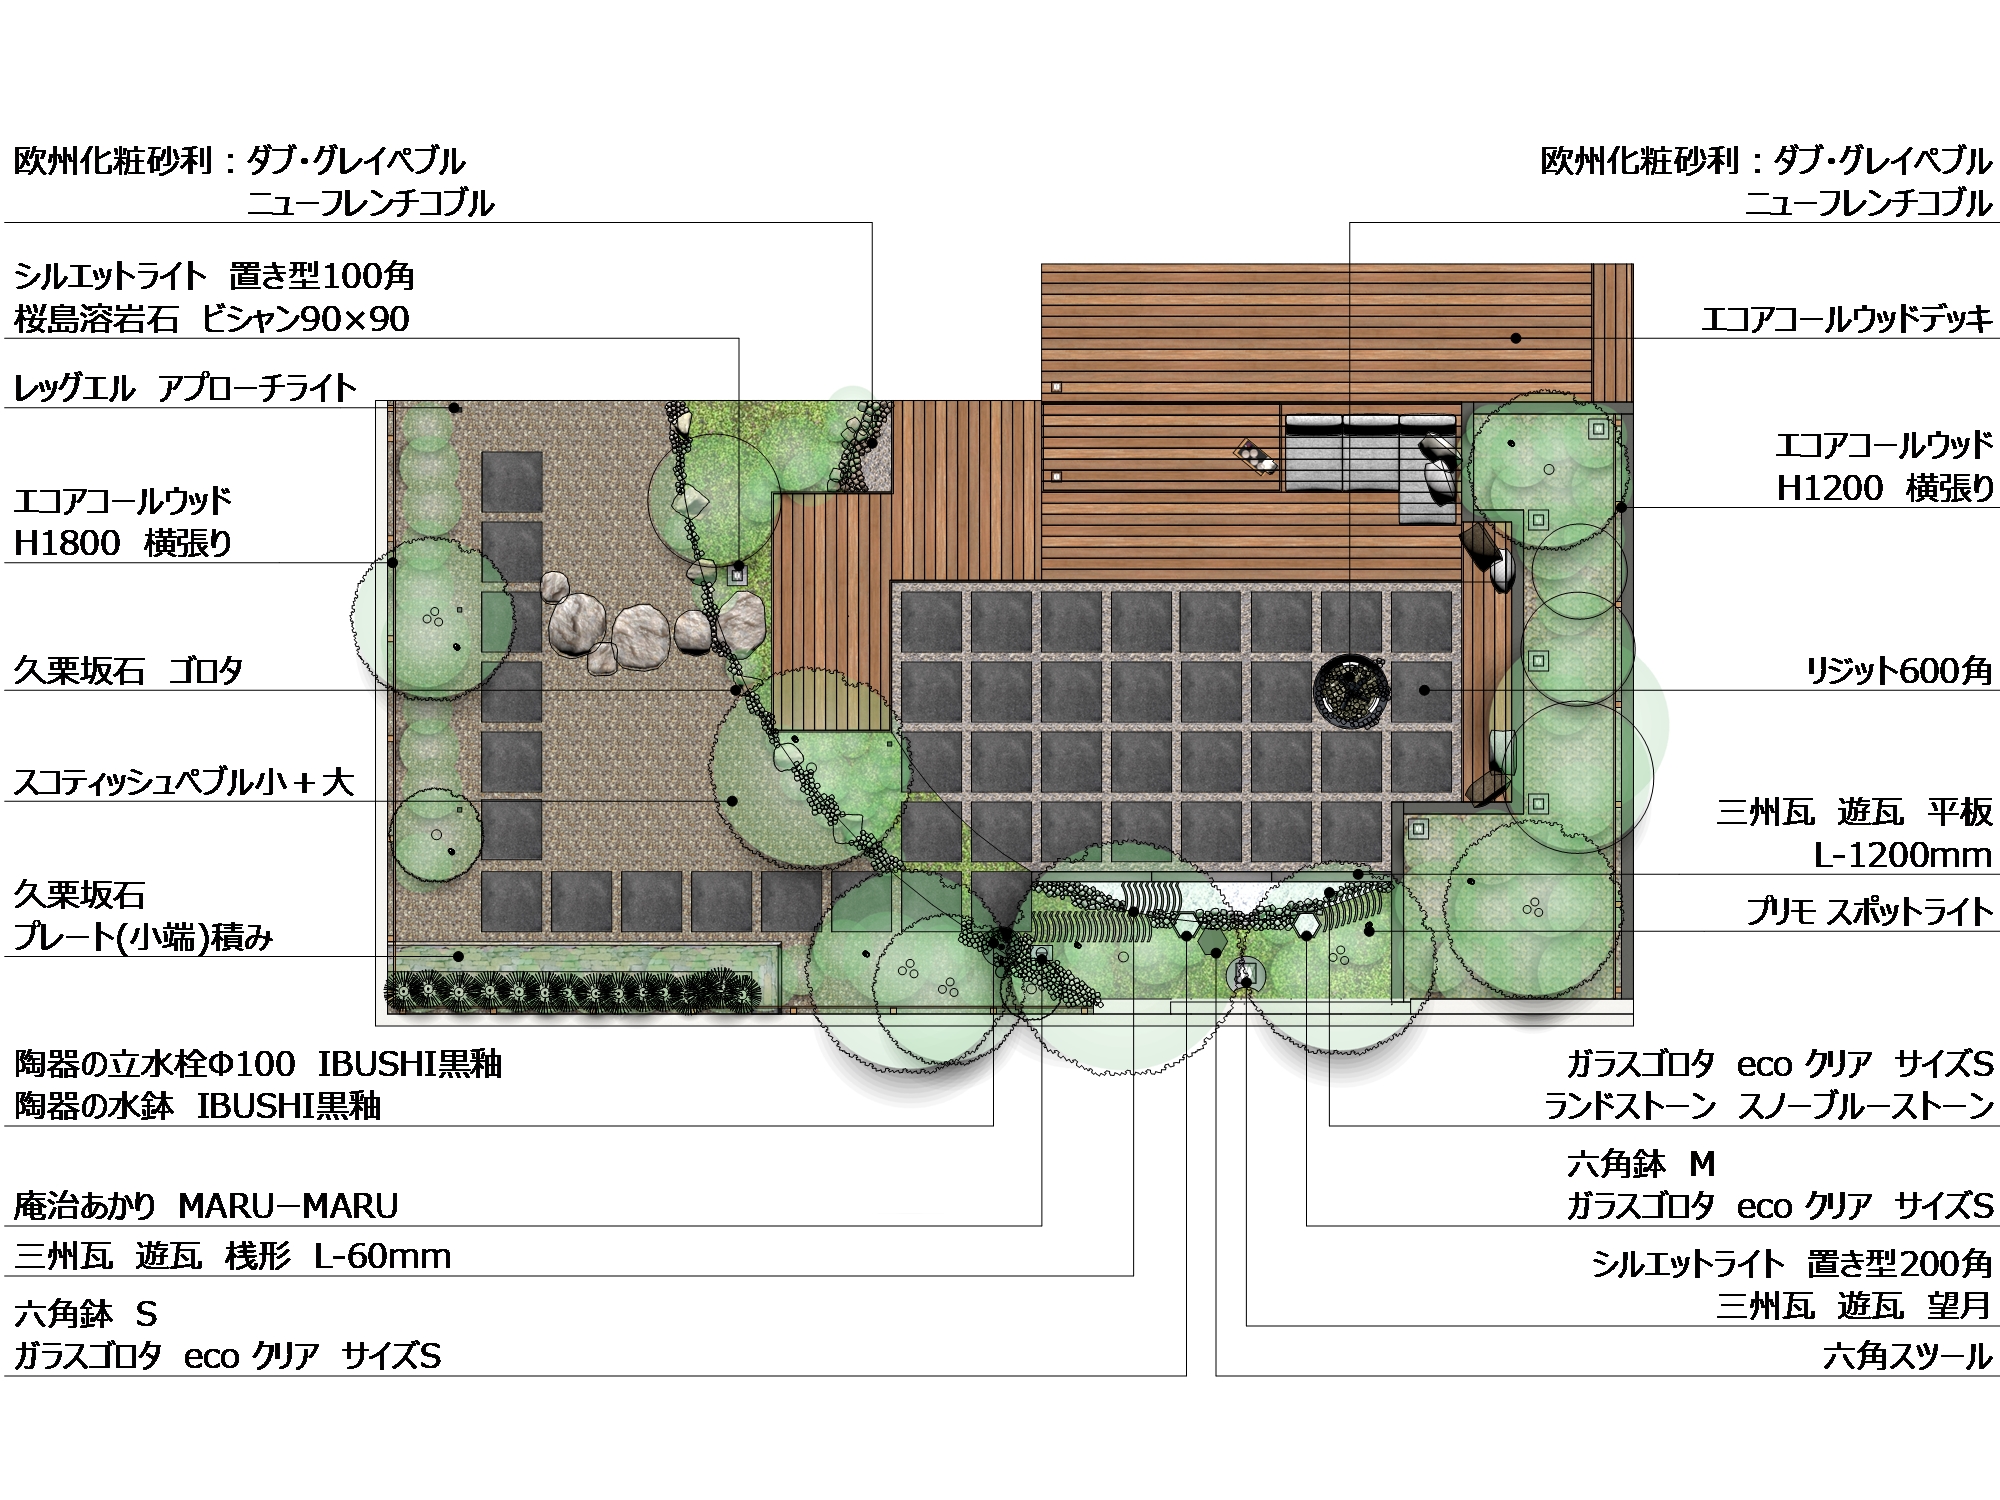 くつろぎ 憩える場所を室内から外部空間へつなげる Wa Style エクスプラット エクステリア ガーデンデザイン プラン検索サイト Rikcadデータ無料配信